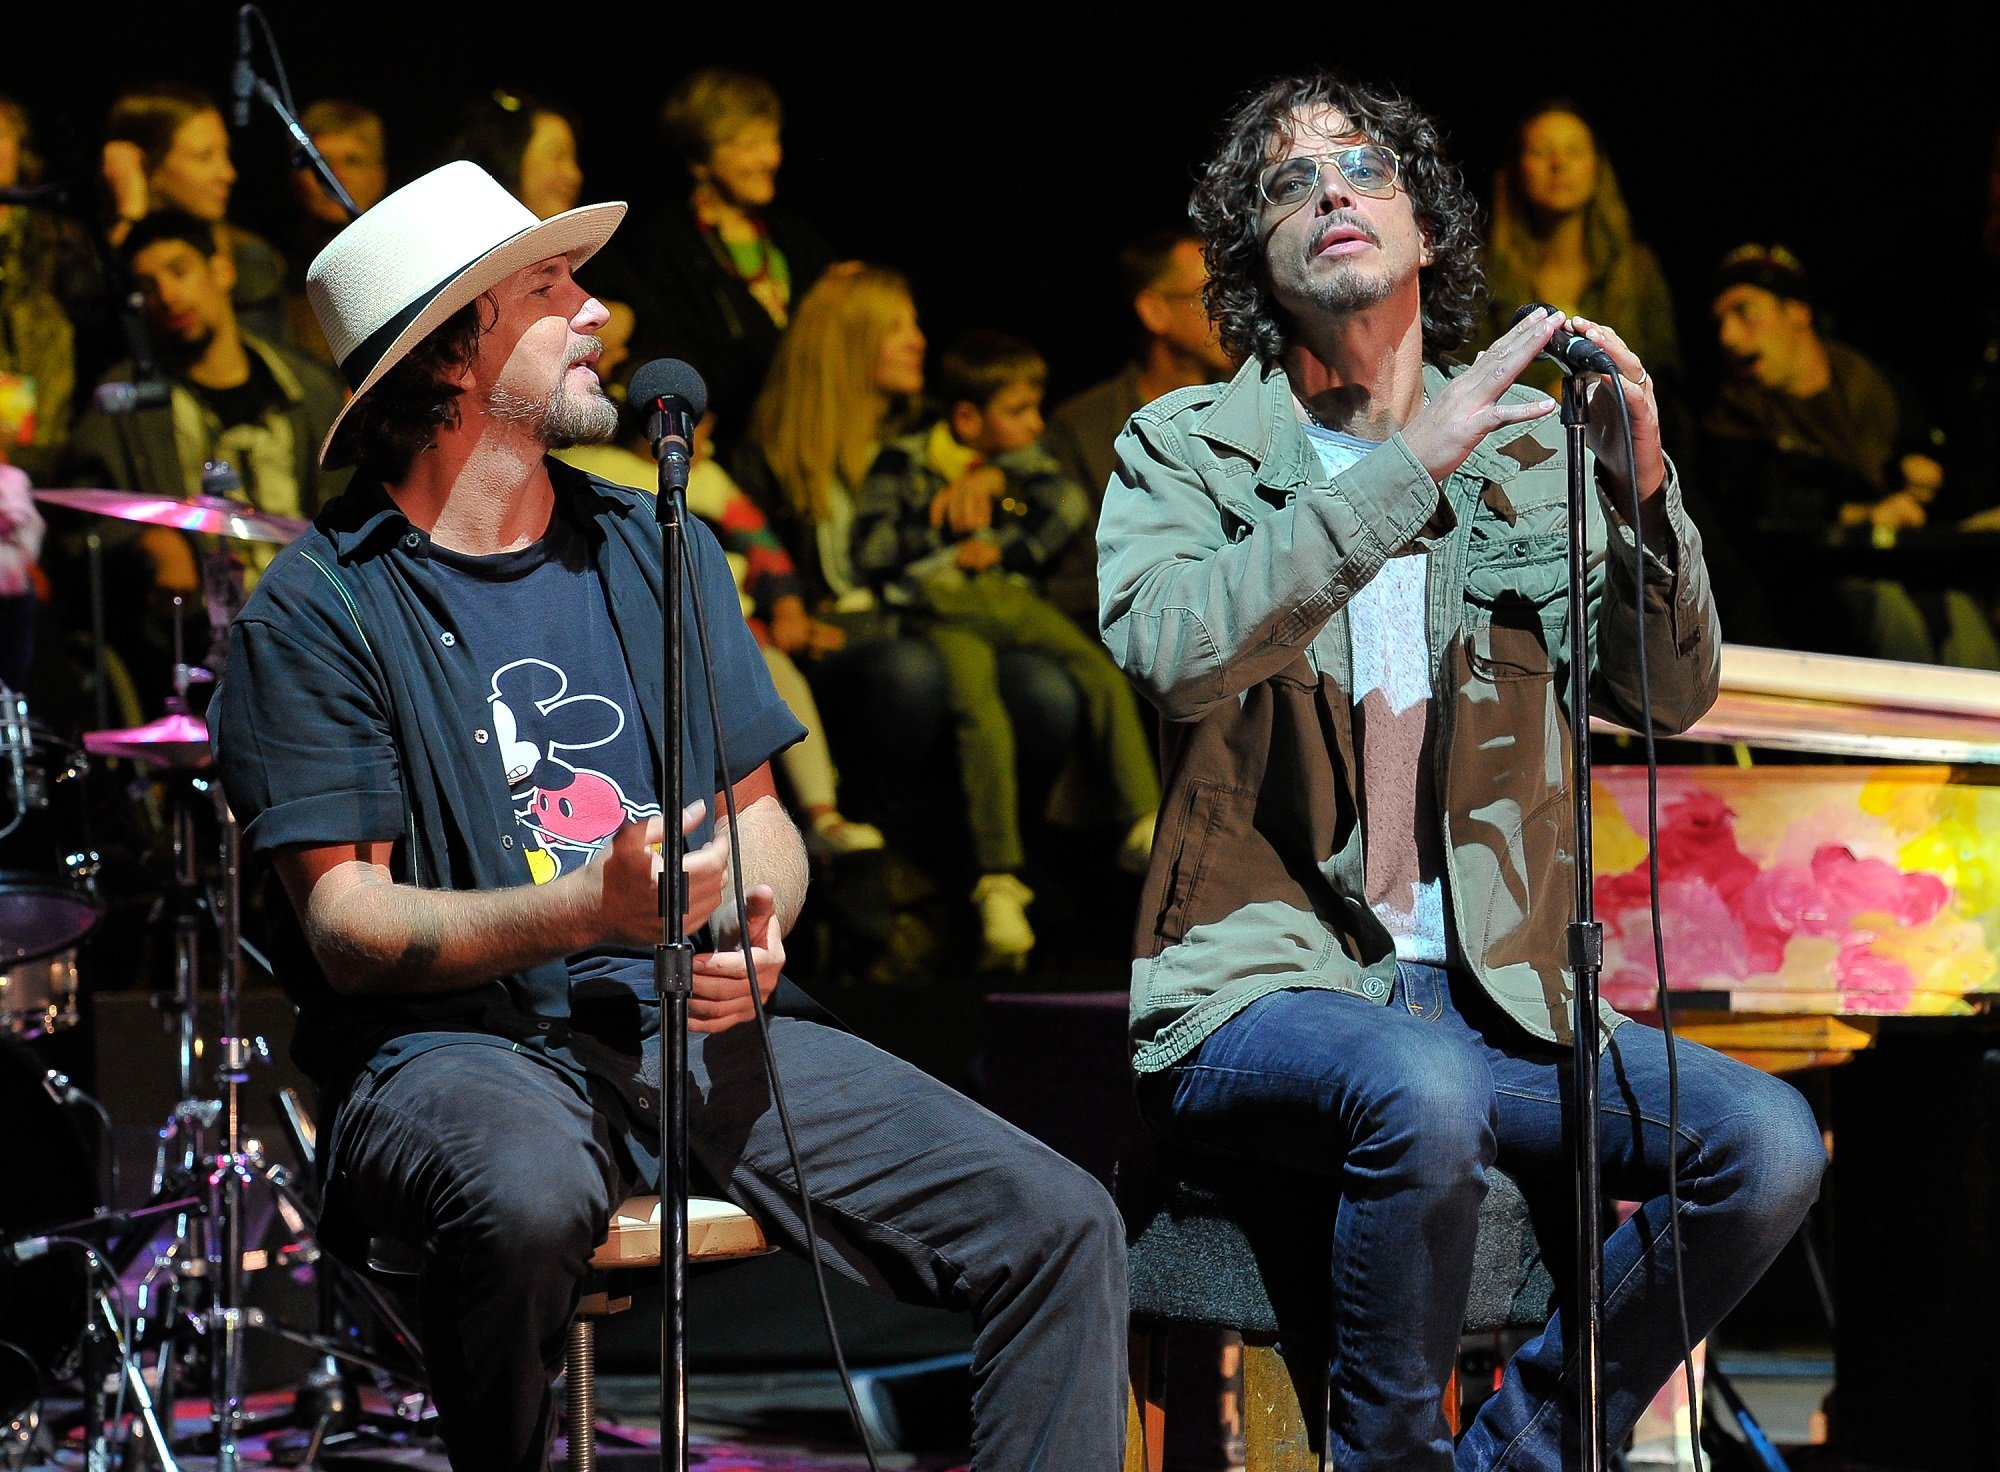 Eddie Vedder and Chris Cornell